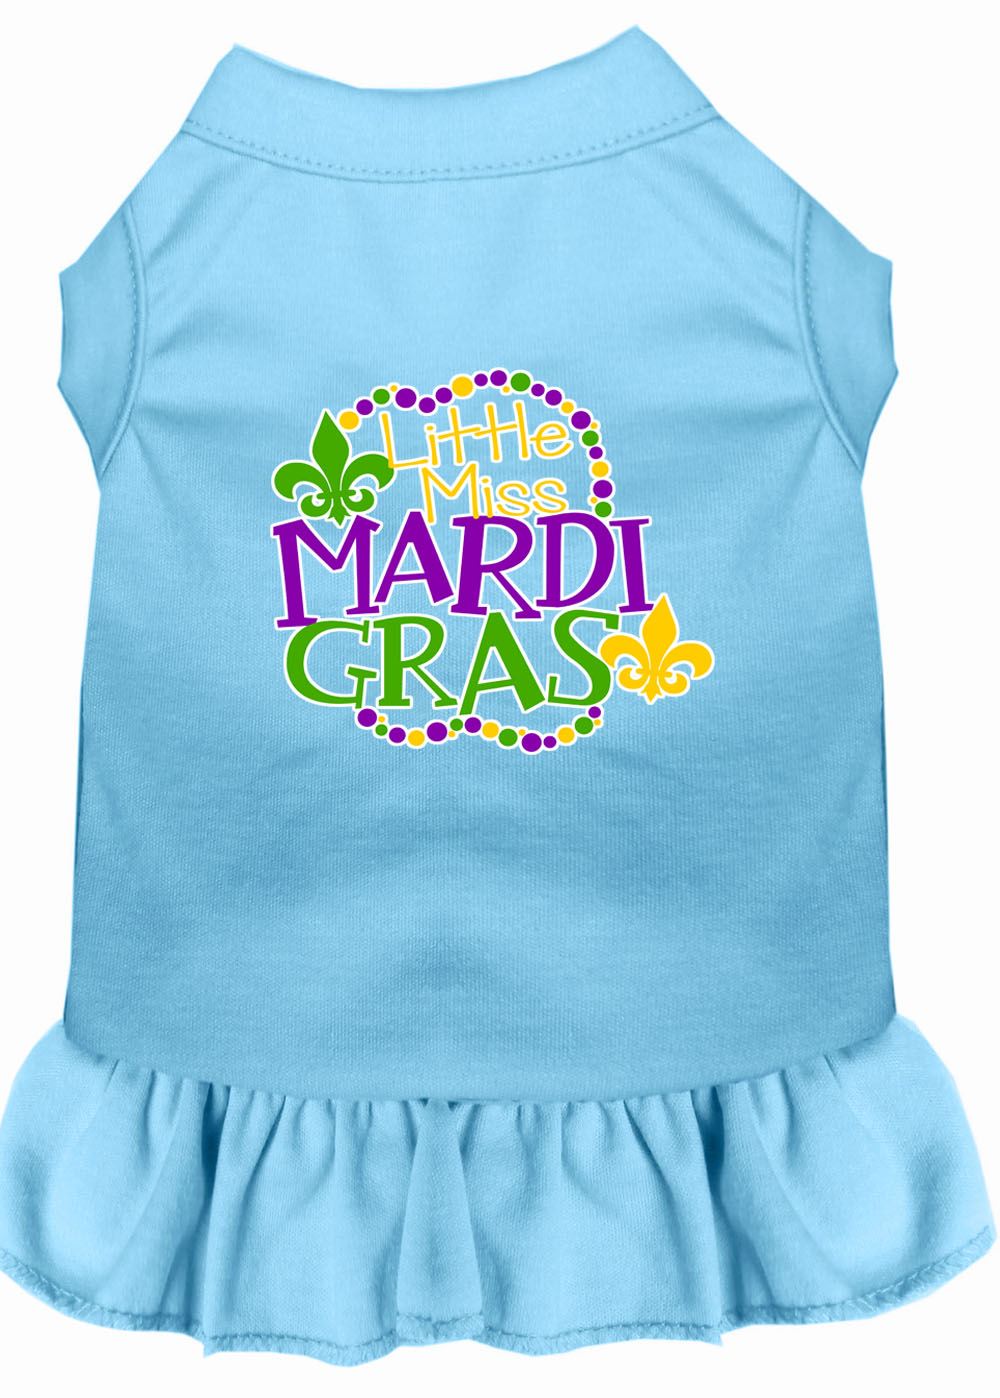 Miss Mardi Gras Screen Print Mardi Gras Dog Dress Baby Blue 4X